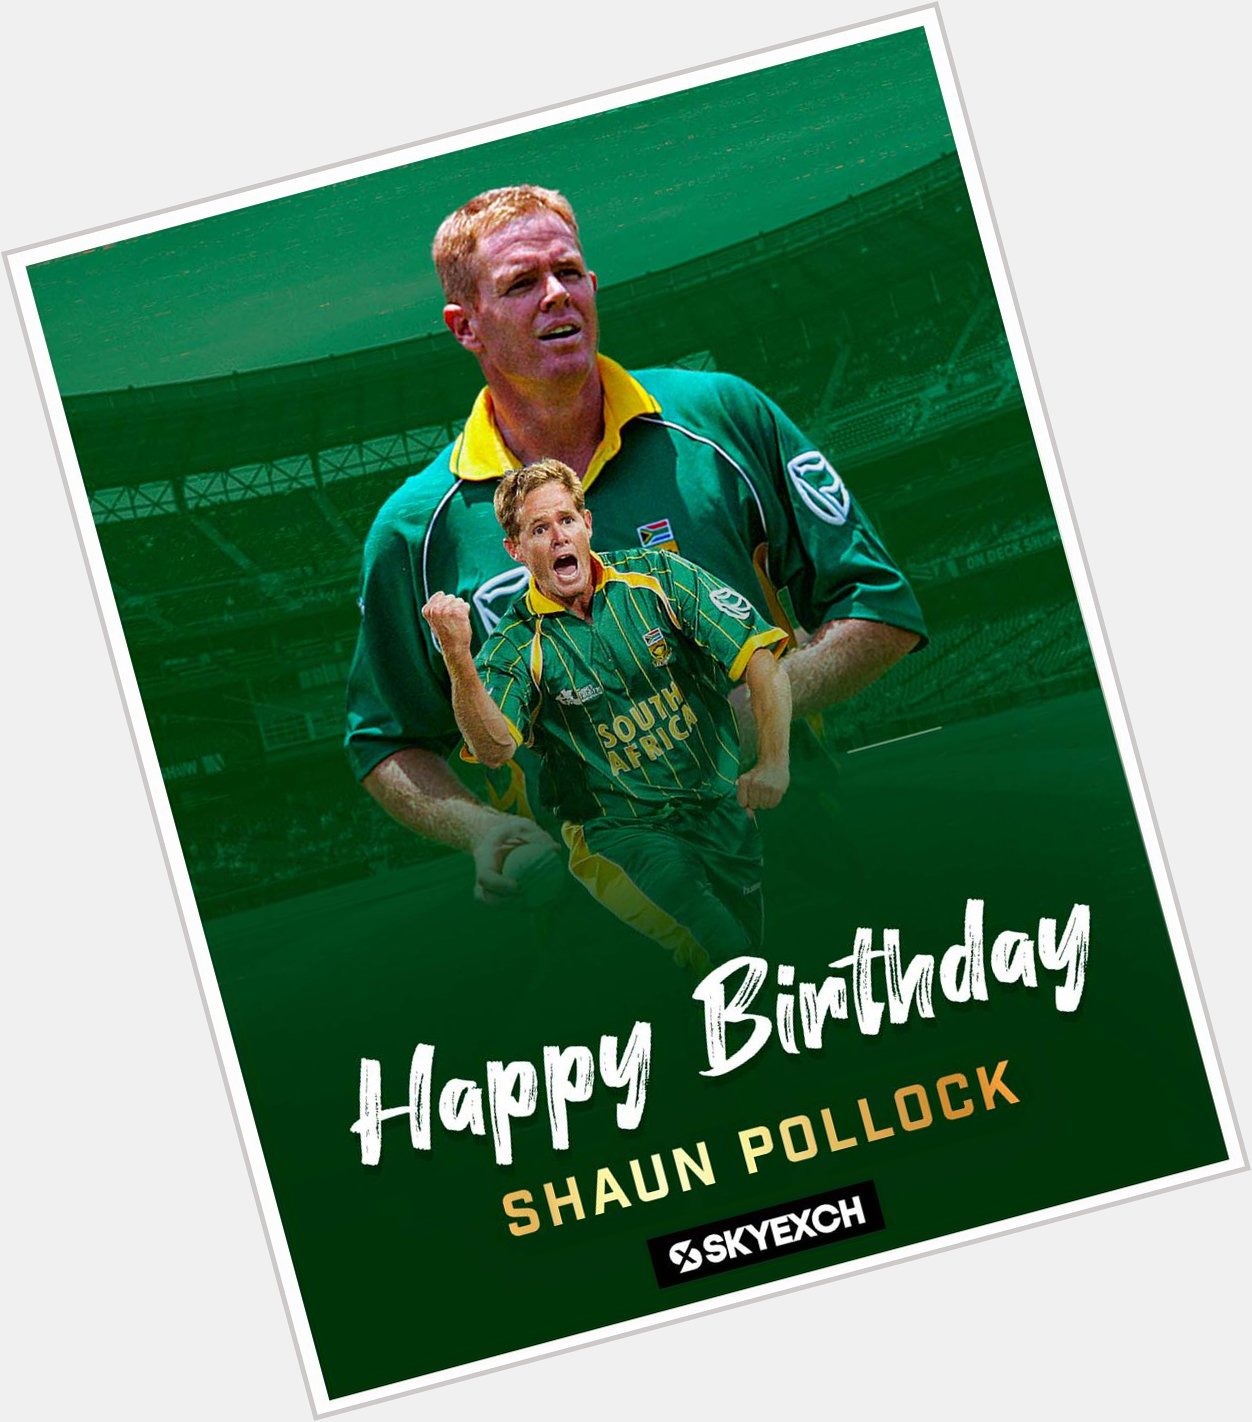 Happy brithday legend Shaun Pollock, he turns 48 today     